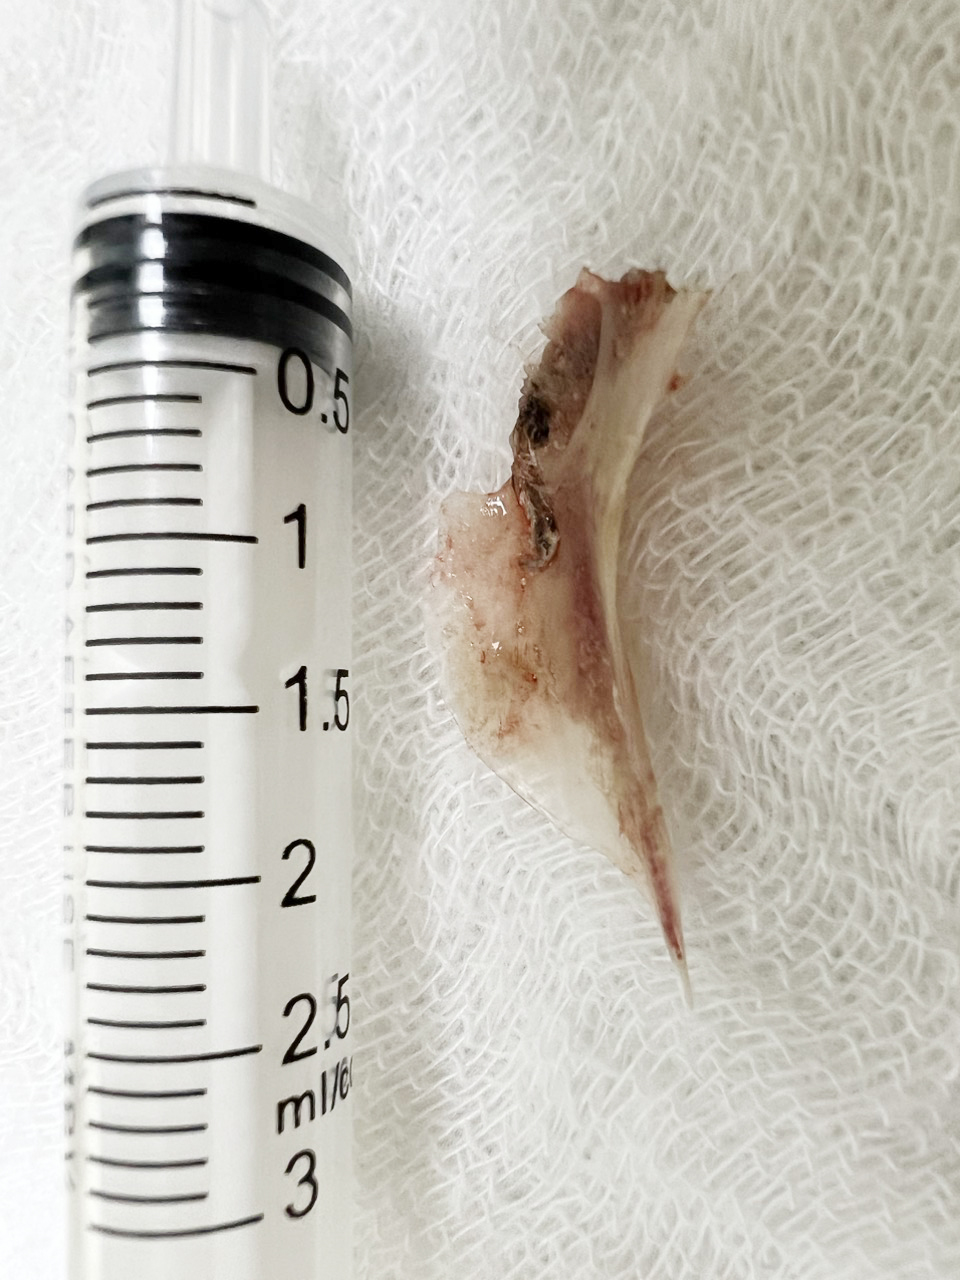 Khẩn cấp nội soi lấy dị vật xương cá dài 2cm đâm xuyên vào thực quản